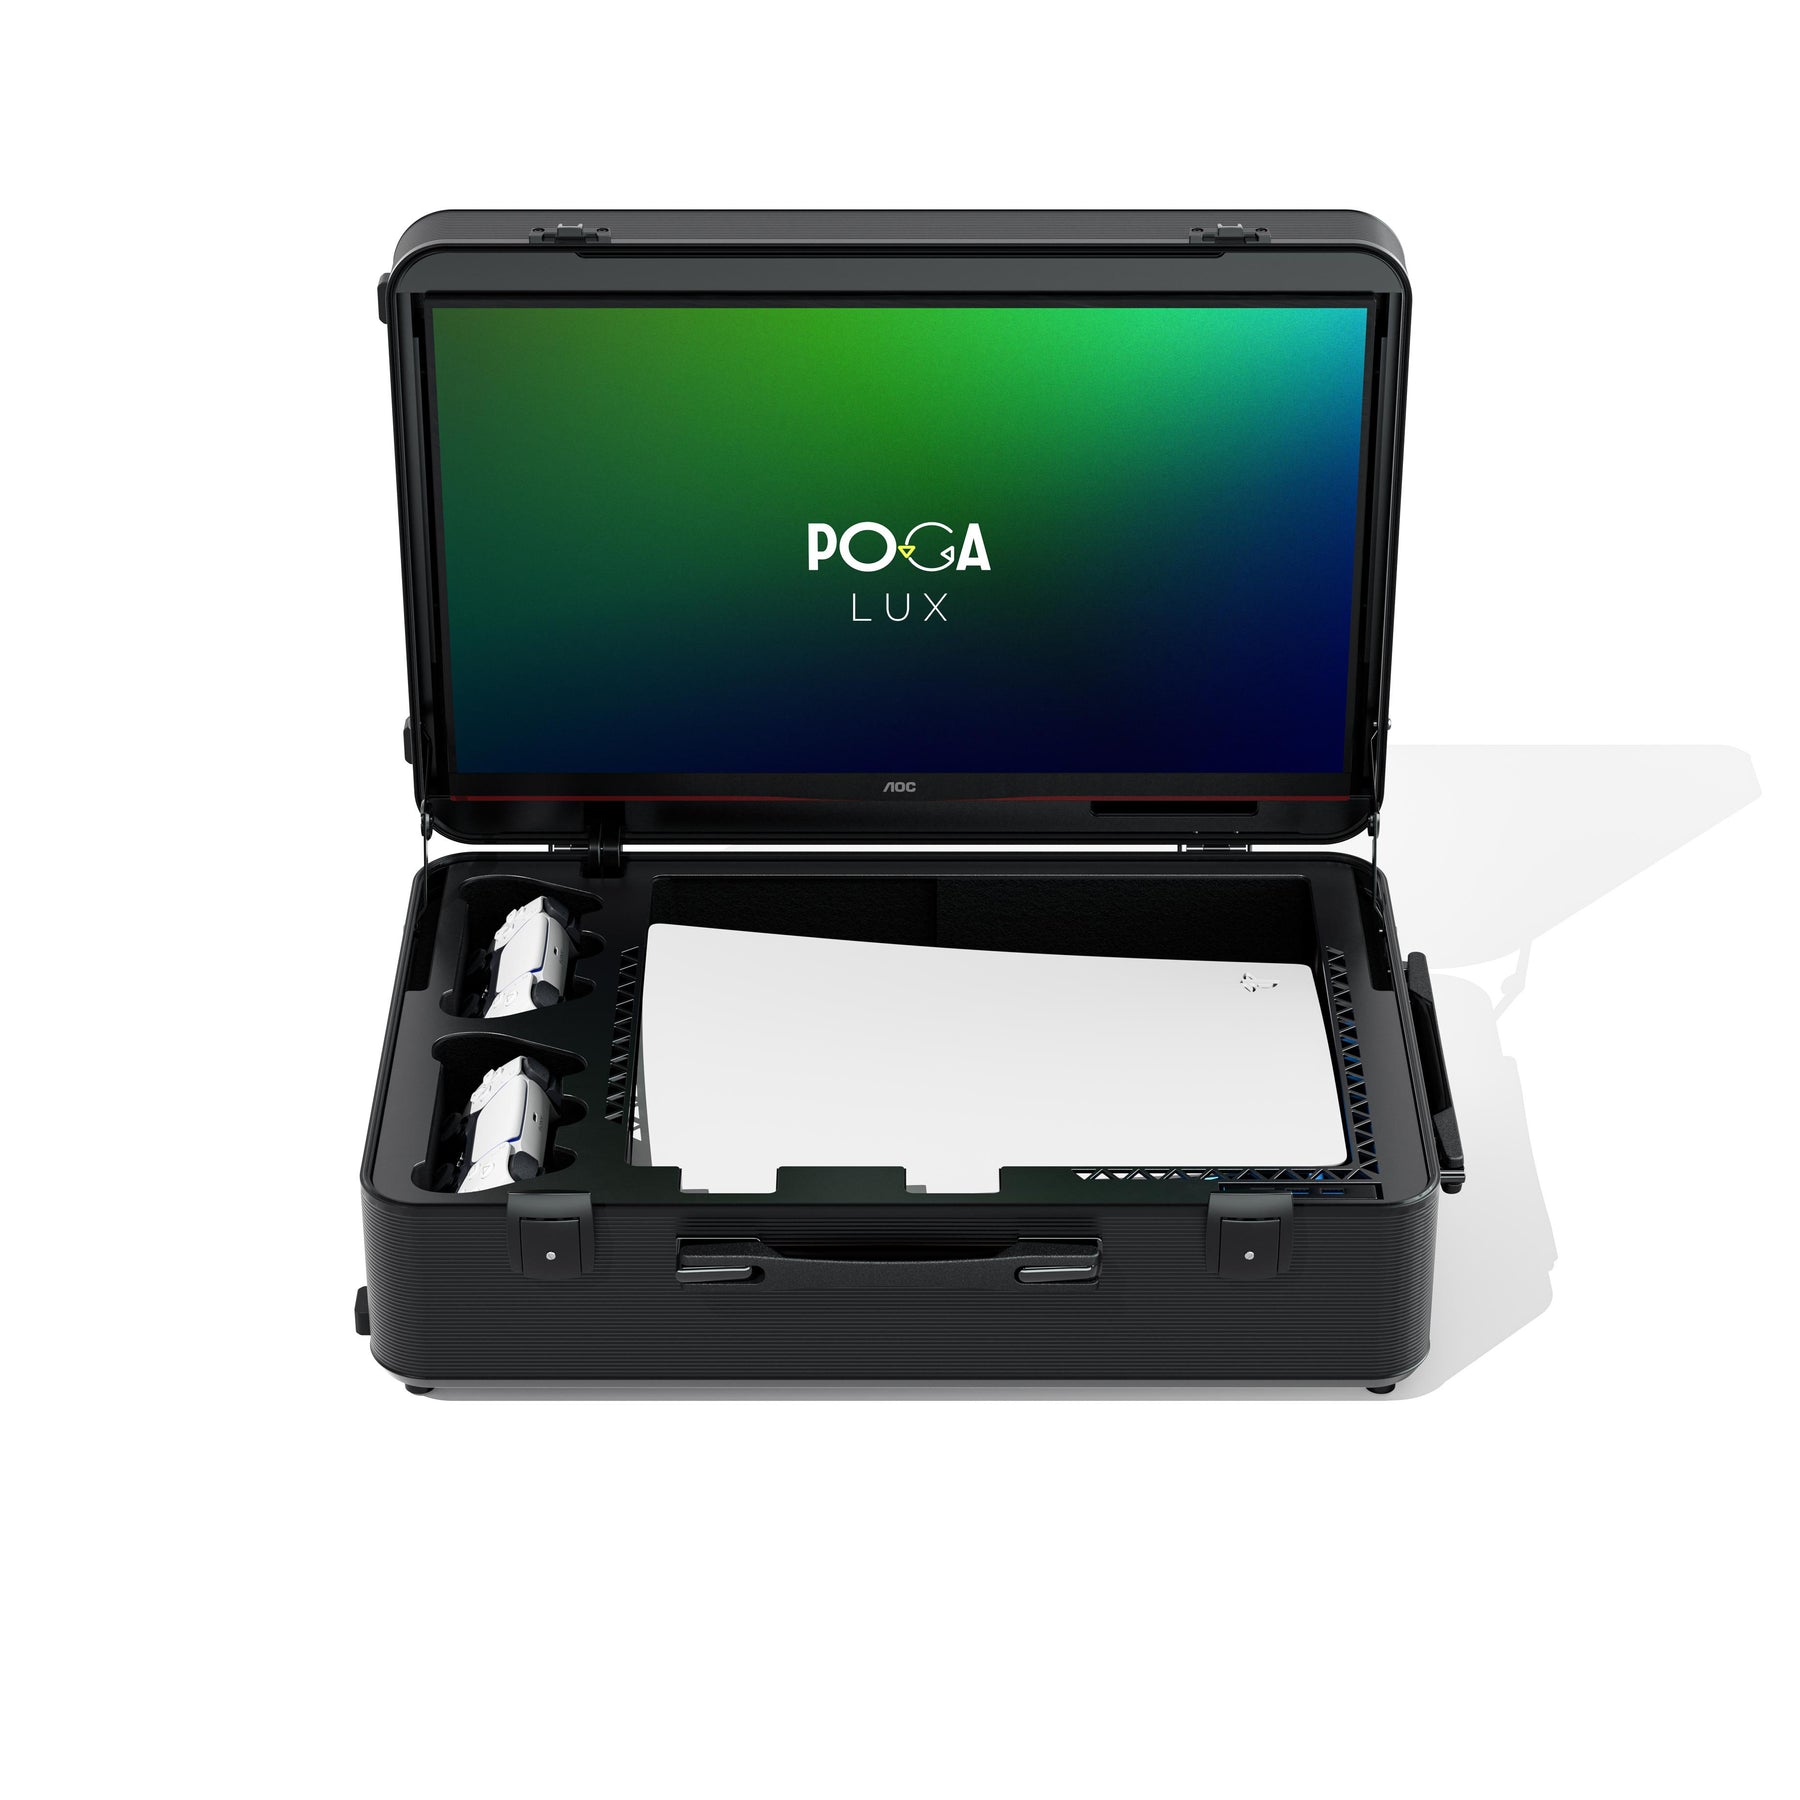 POGA Lux incl. PS5 Console